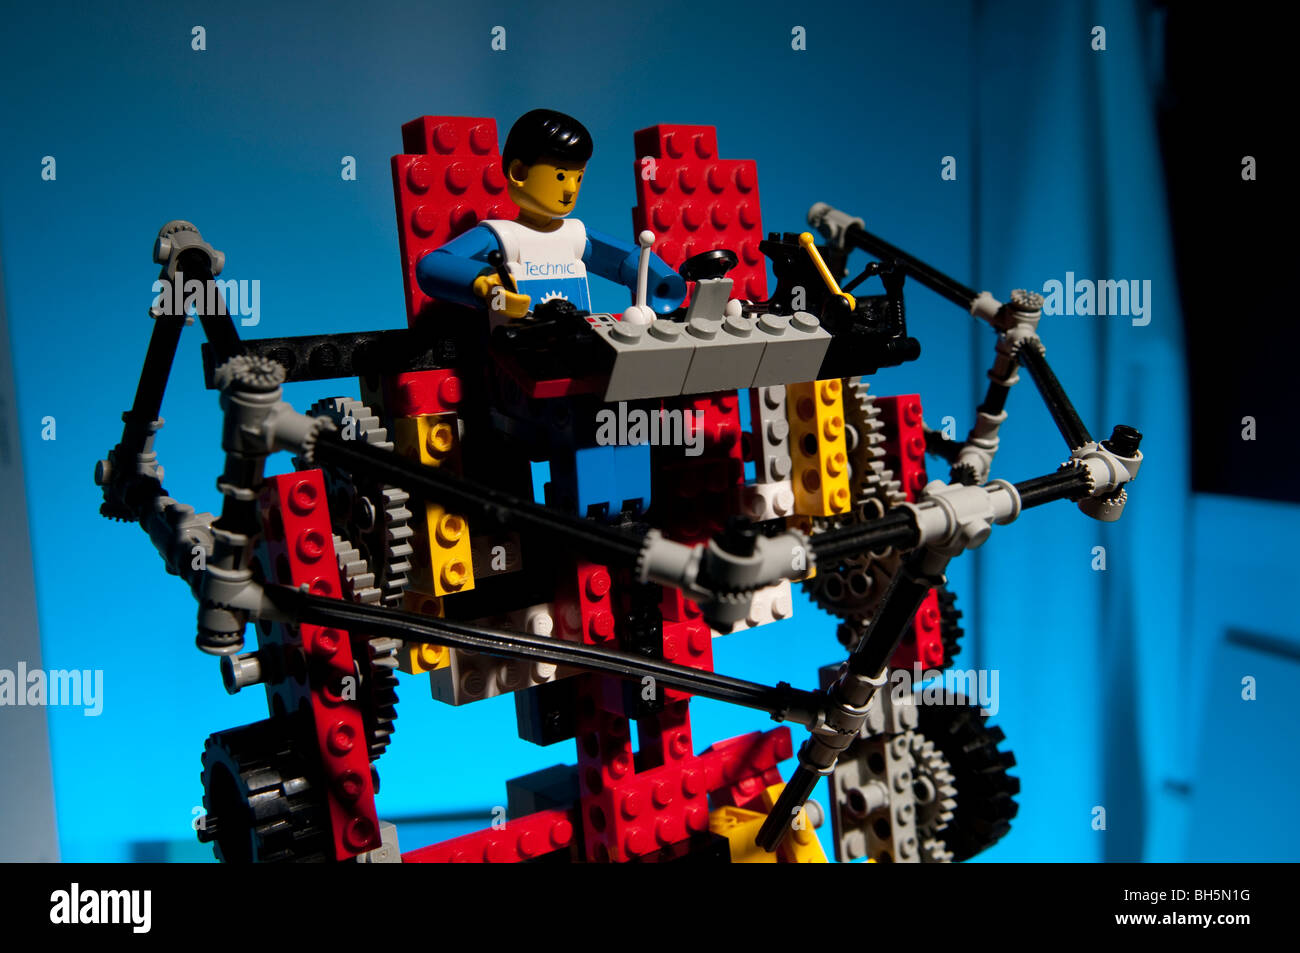 Lego toy machine immagini e fotografie stock ad alta risoluzione - Alamy